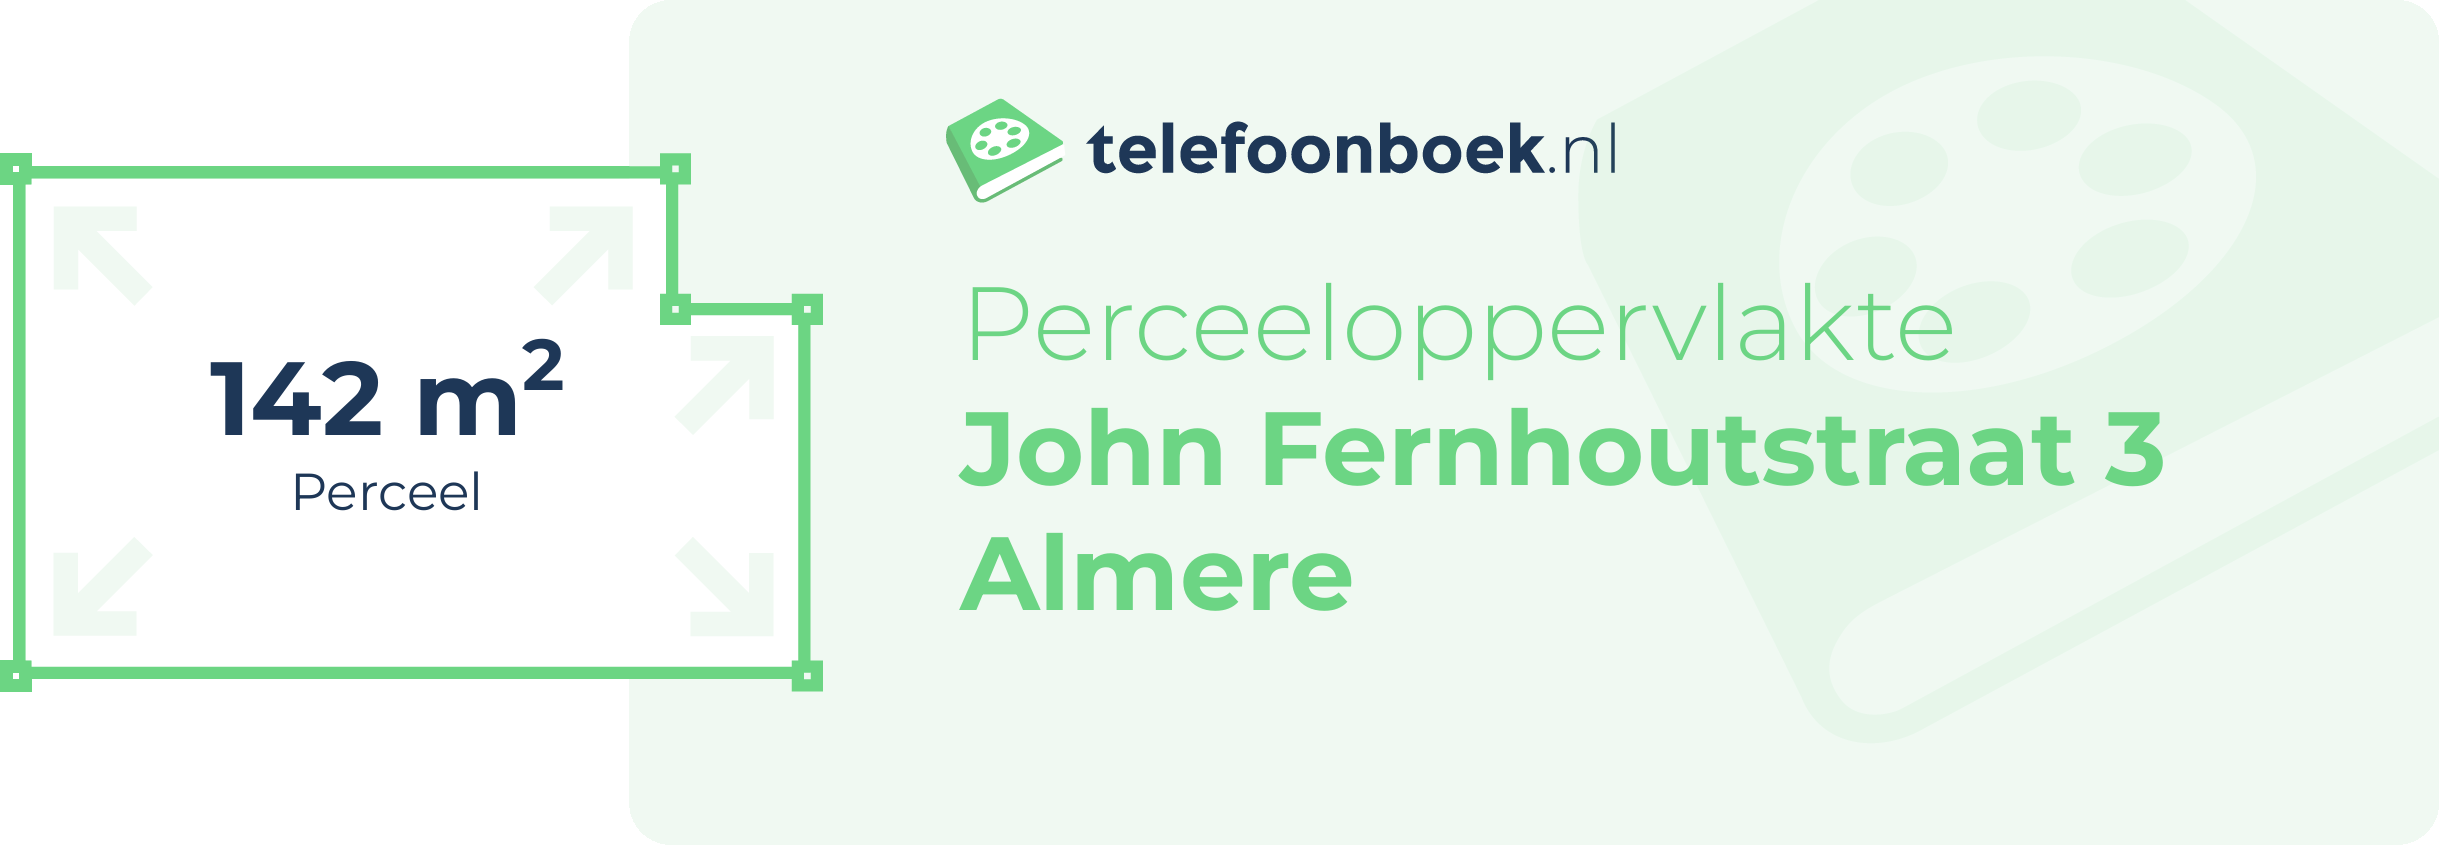 Perceeloppervlakte John Fernhoutstraat 3 Almere